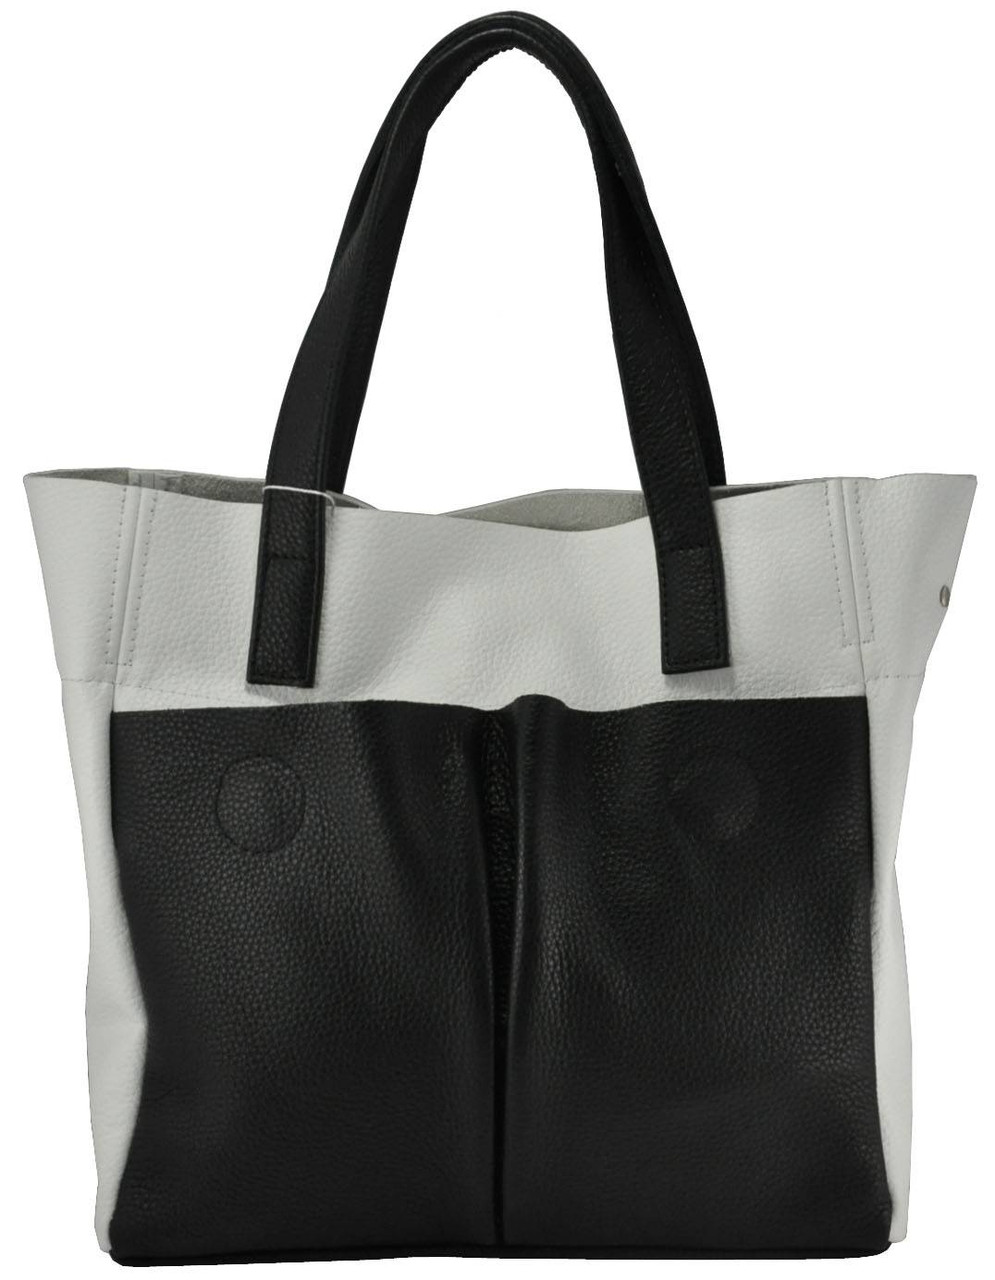 Жіноча шкіряна сумка з кишенями біла з чорним